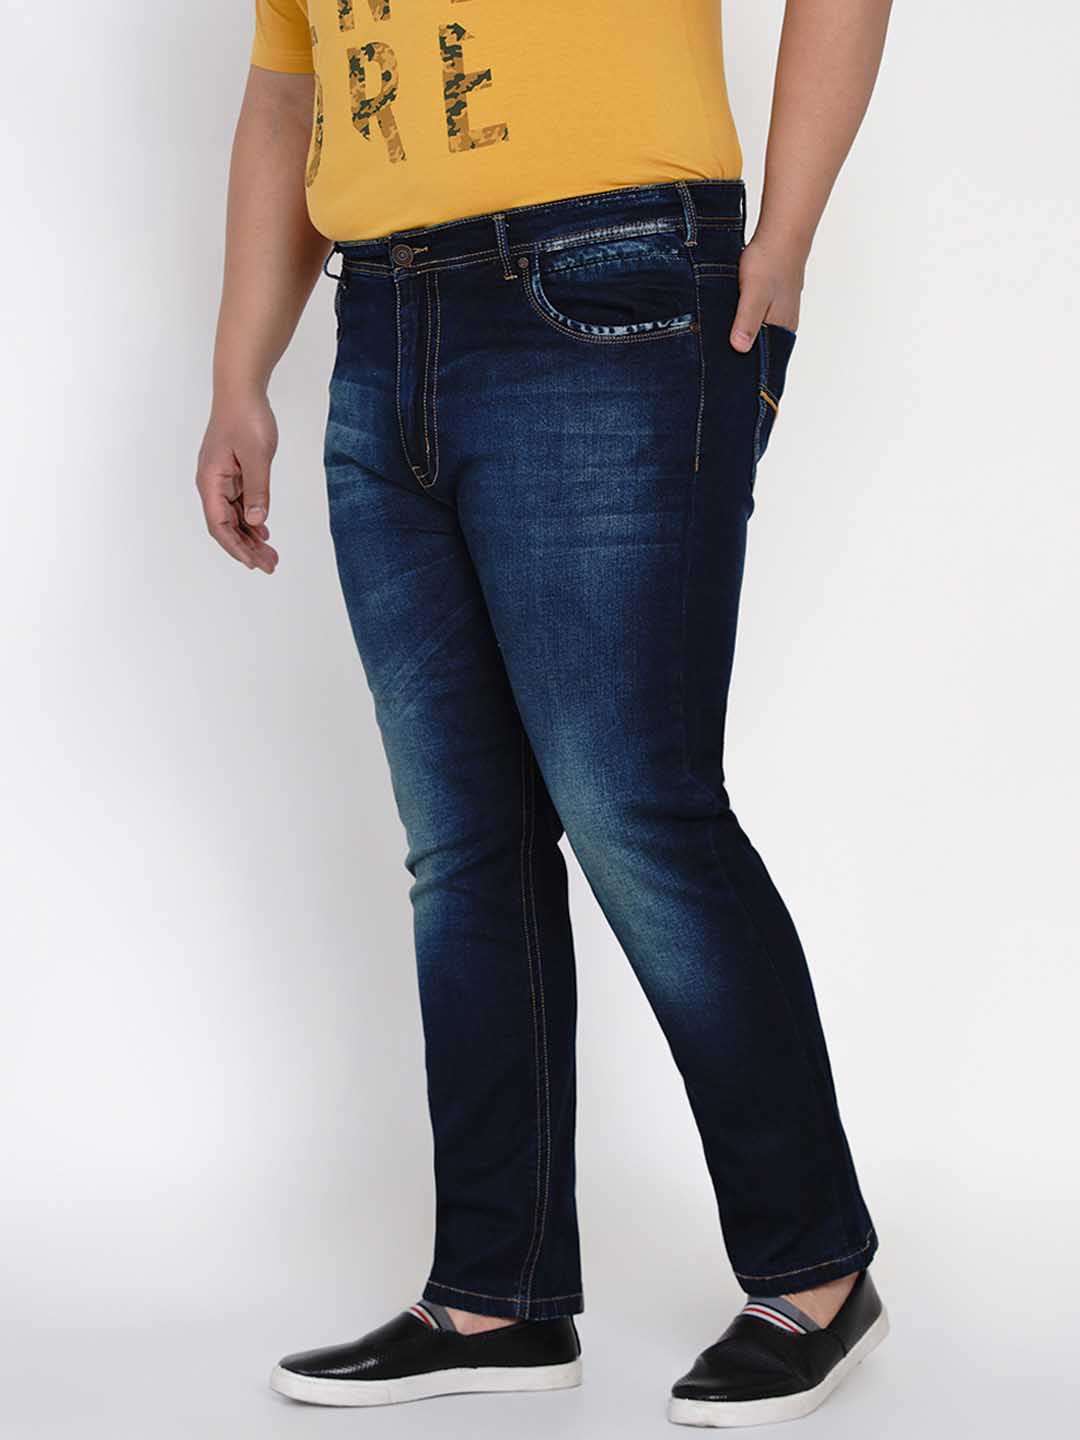 bottomwear/jeans/JPJ12113/jpj12113-3.jpg